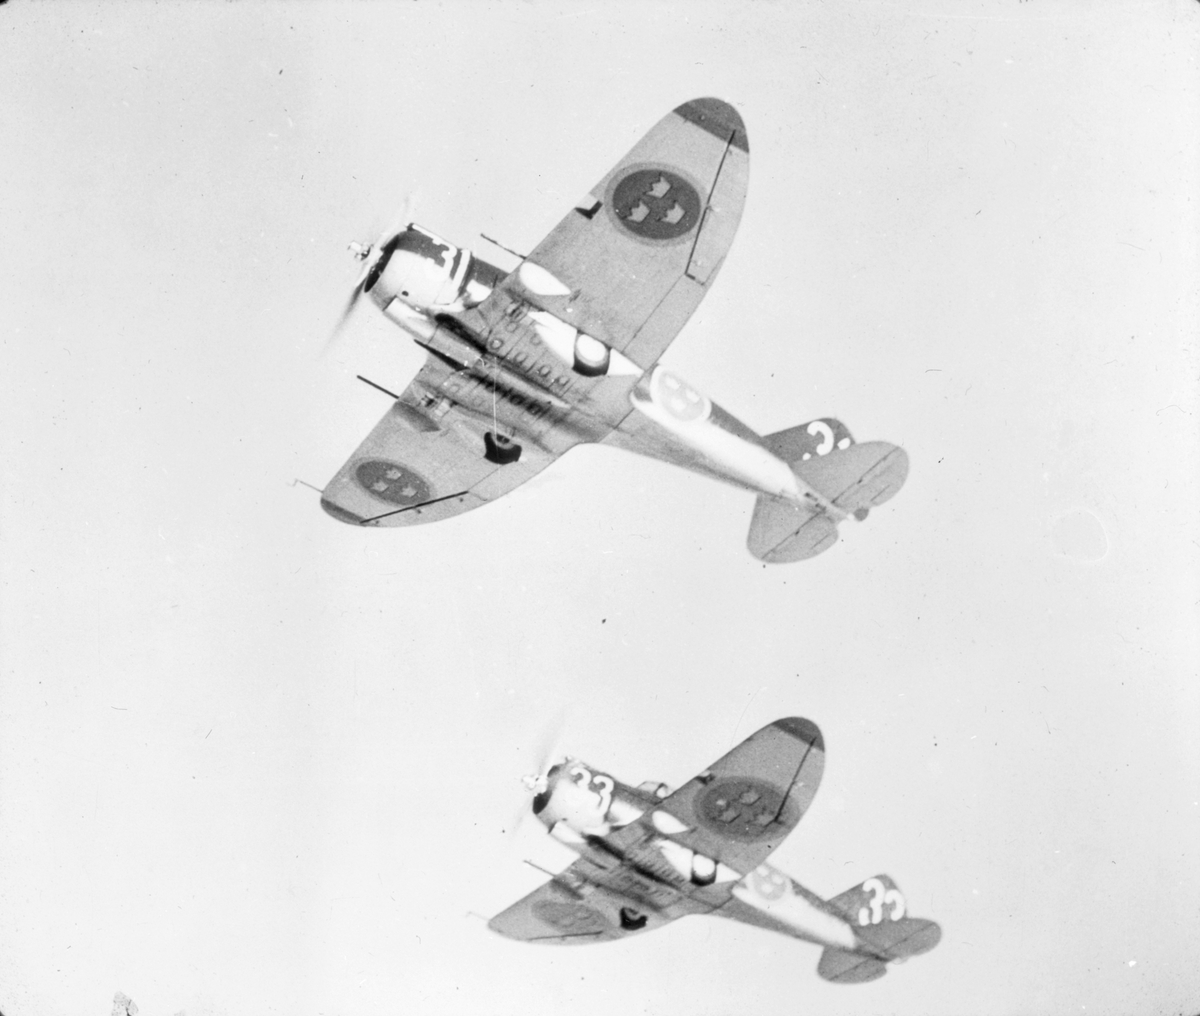 Roteflygning med jaktflygplan J 9 märkt 31 och 33 ur 3. divisionen på F 8 Barkarby. Sett nedifrån.